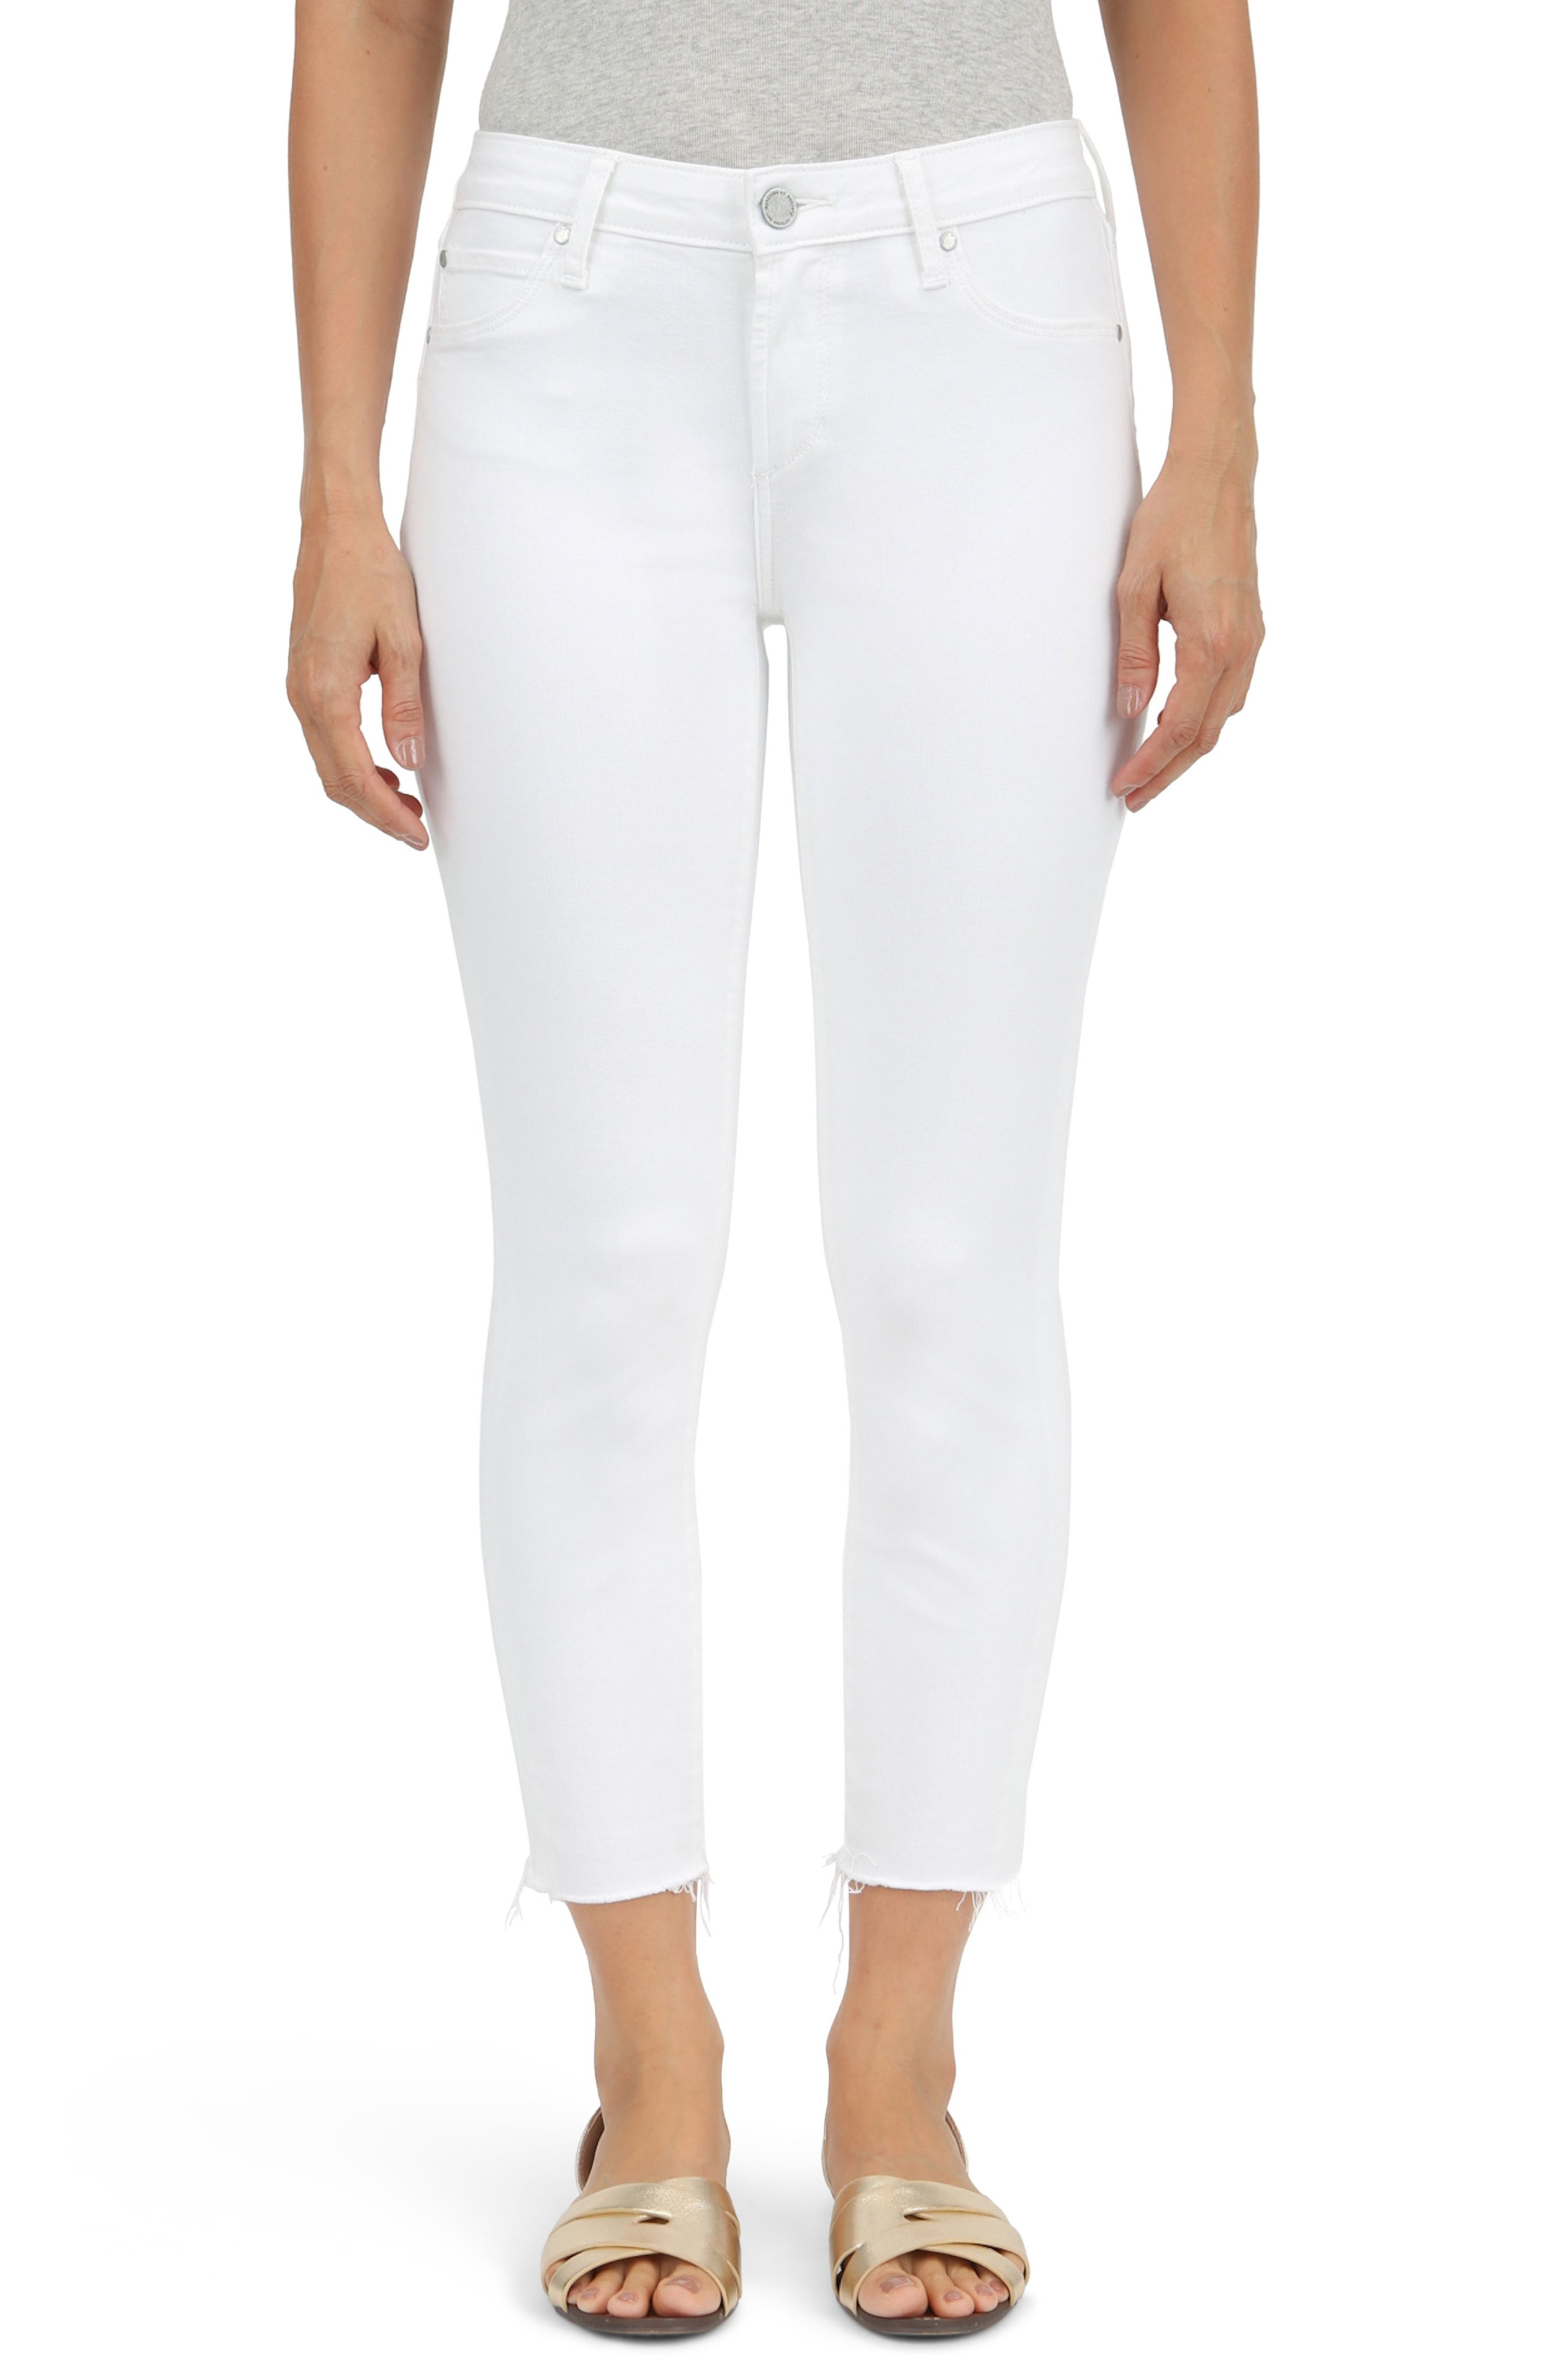 AOS white jeans